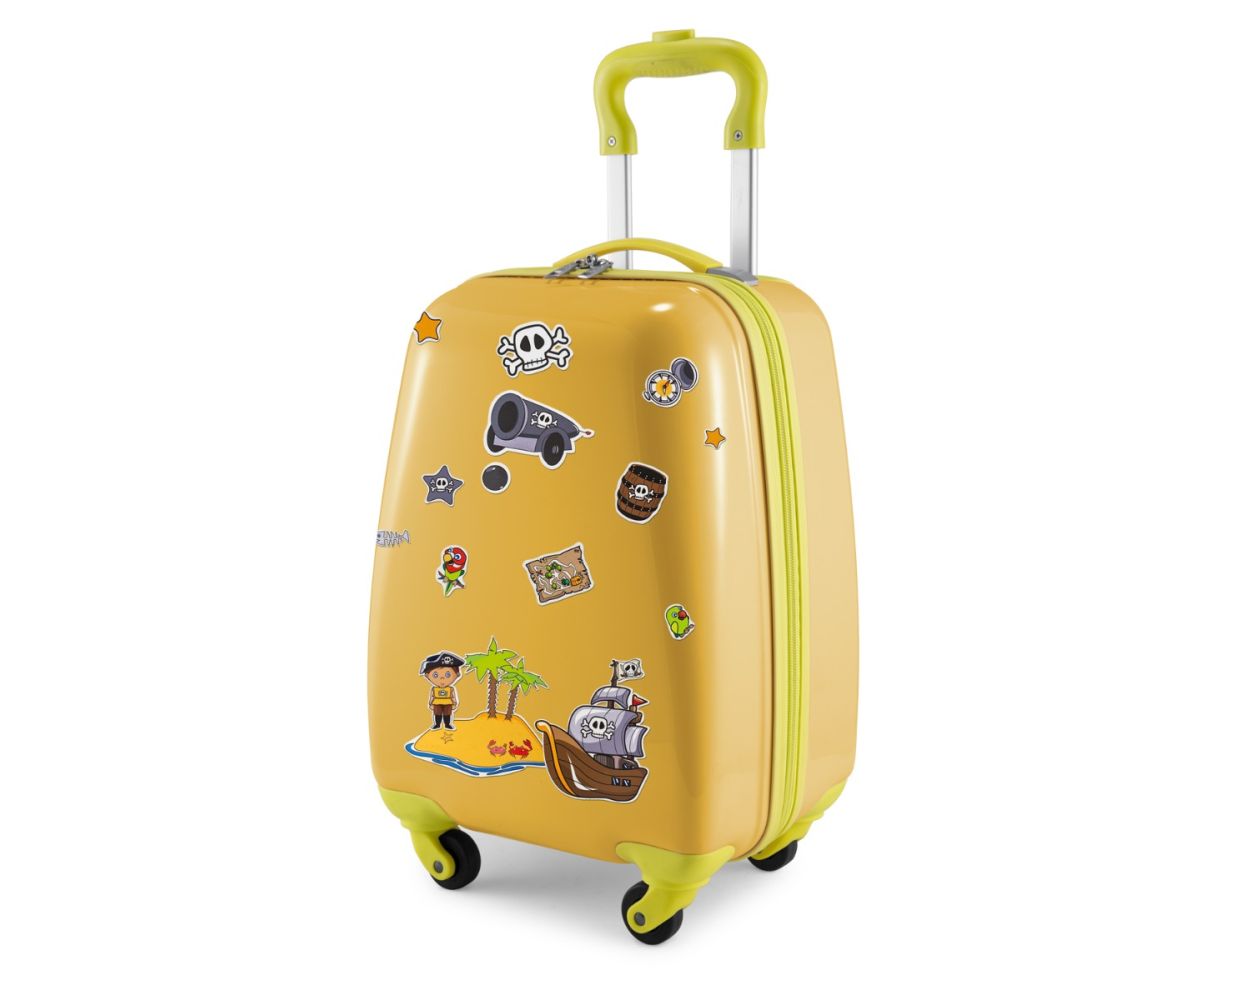 For Kids - Kindergepäck + reflektierende Aufkleber Piraten, Kinderkoffer,  Hartschalenkoffer für Kinder, Handgepäck, 24 Liter, Gelb